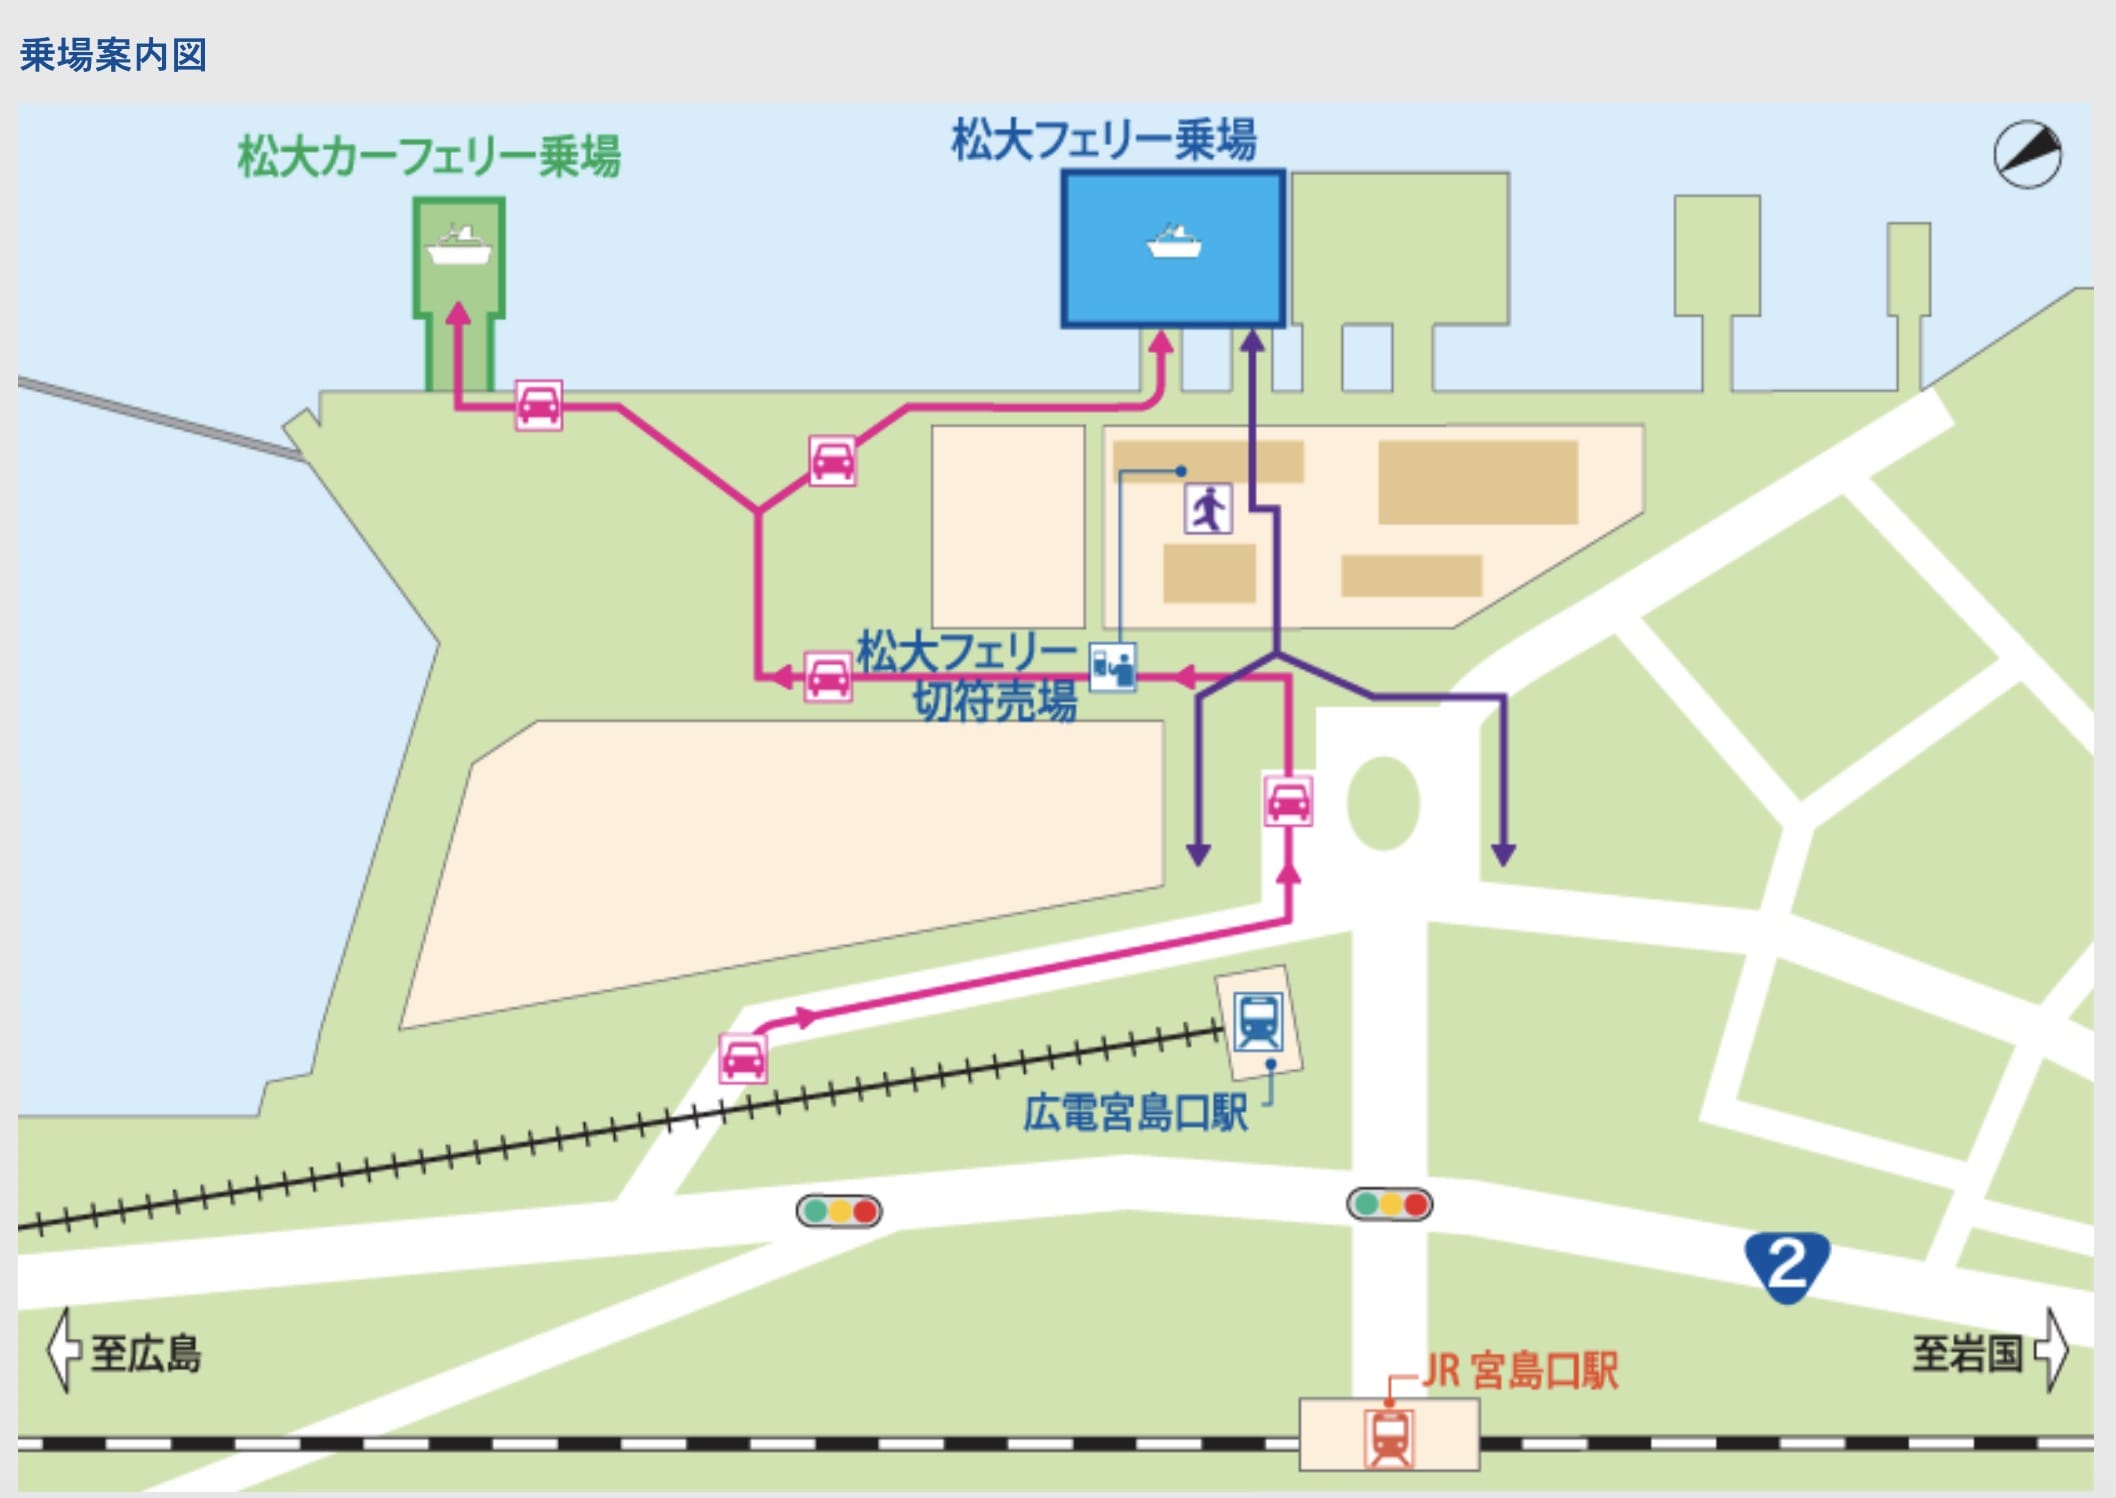 宮島交通方式整理|廣島路面電車、JR鐵路、宮島渡輪船、宮島纜車